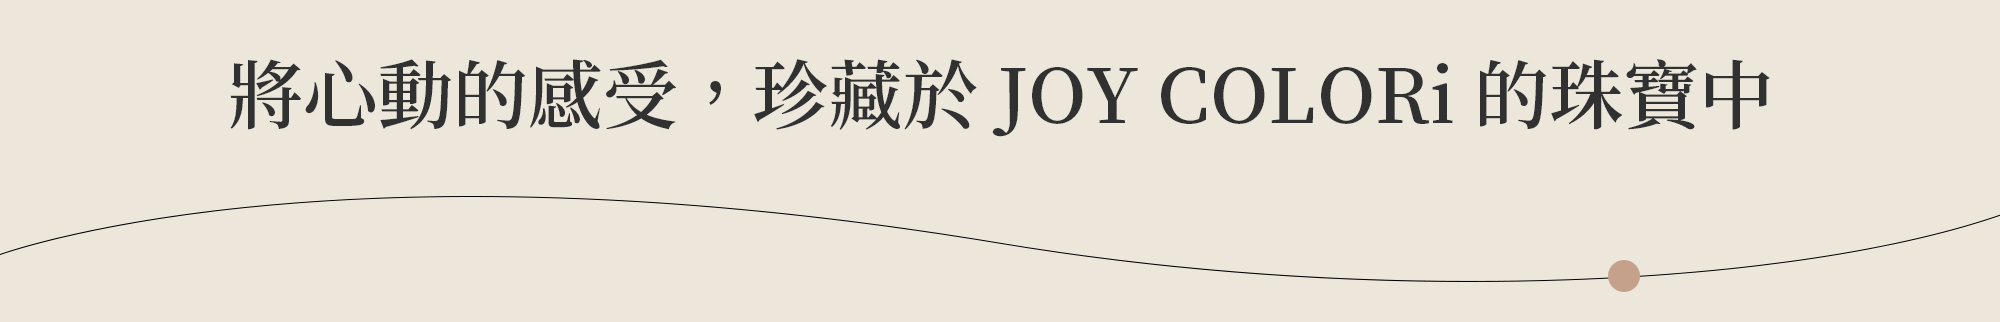 a day-joy colori-4